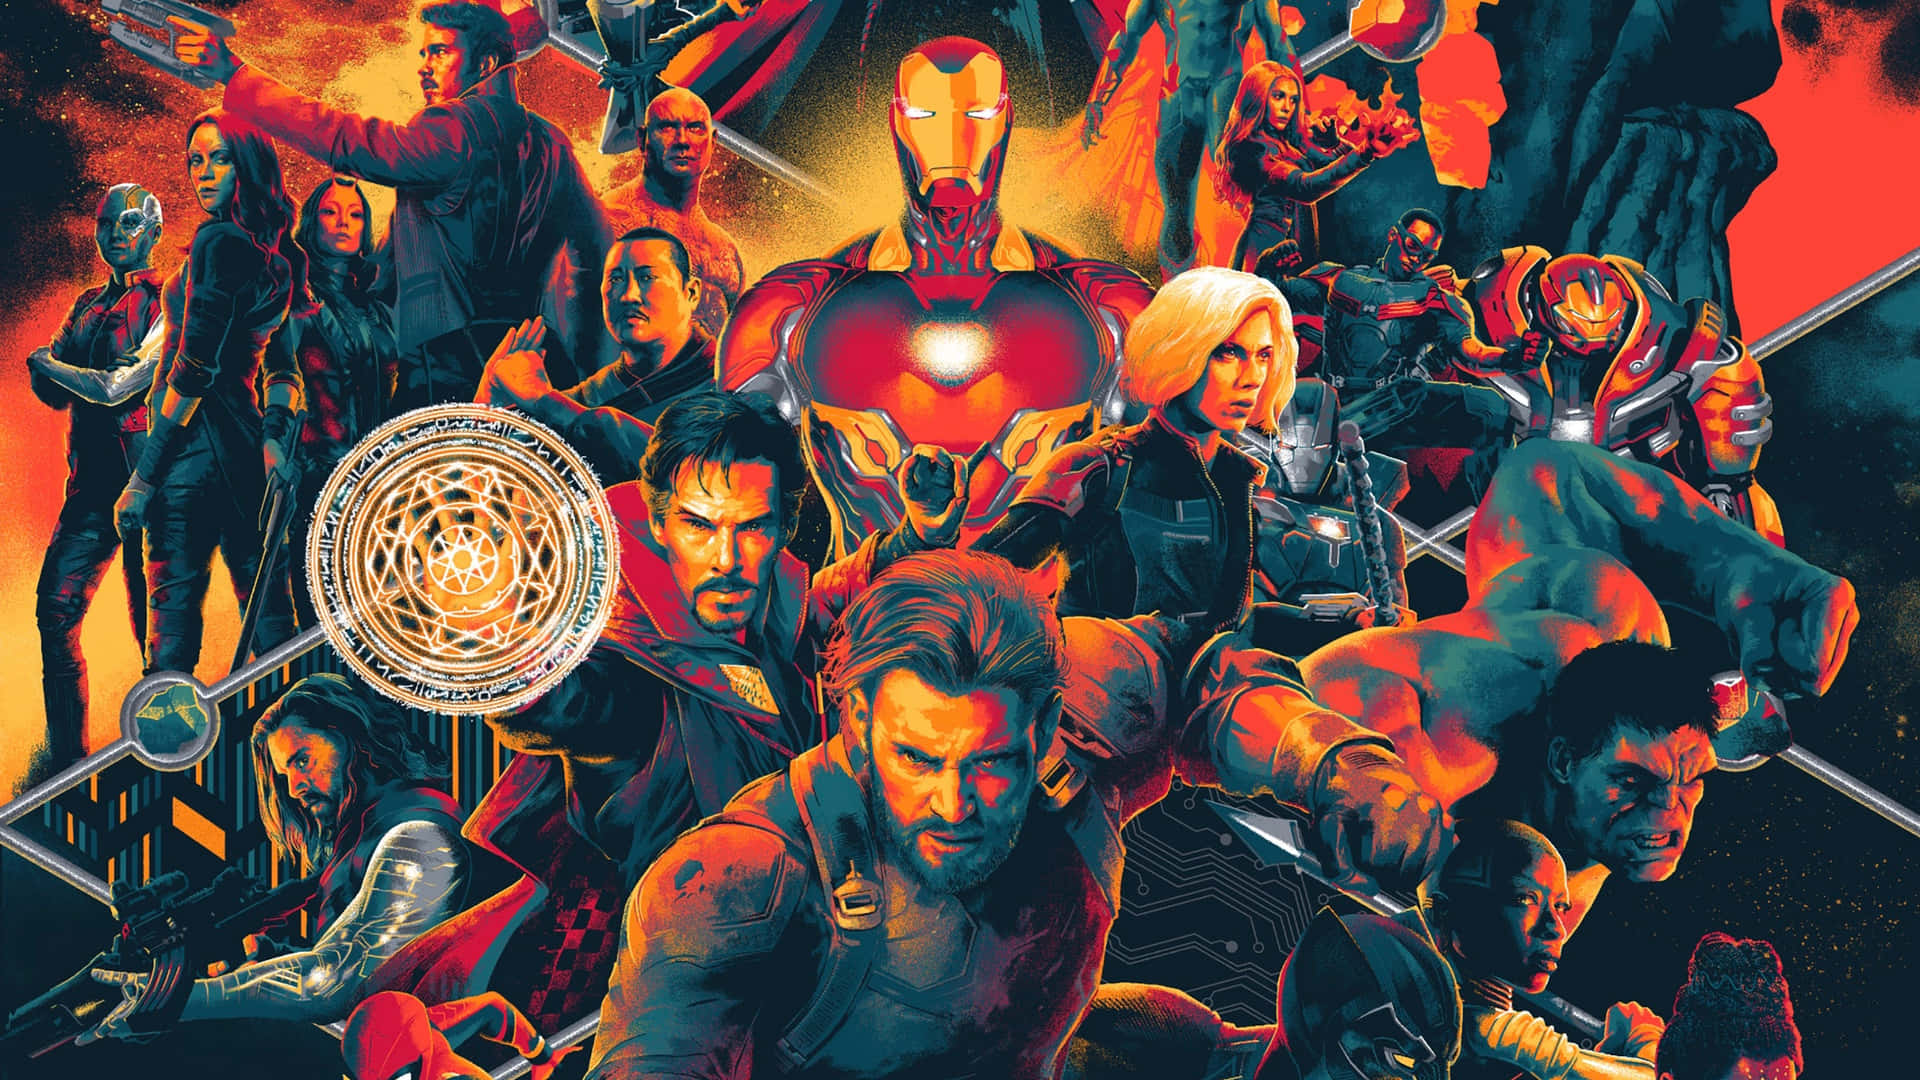 Avengers: Infinity War – “Avengers Saml!” Wallpaper